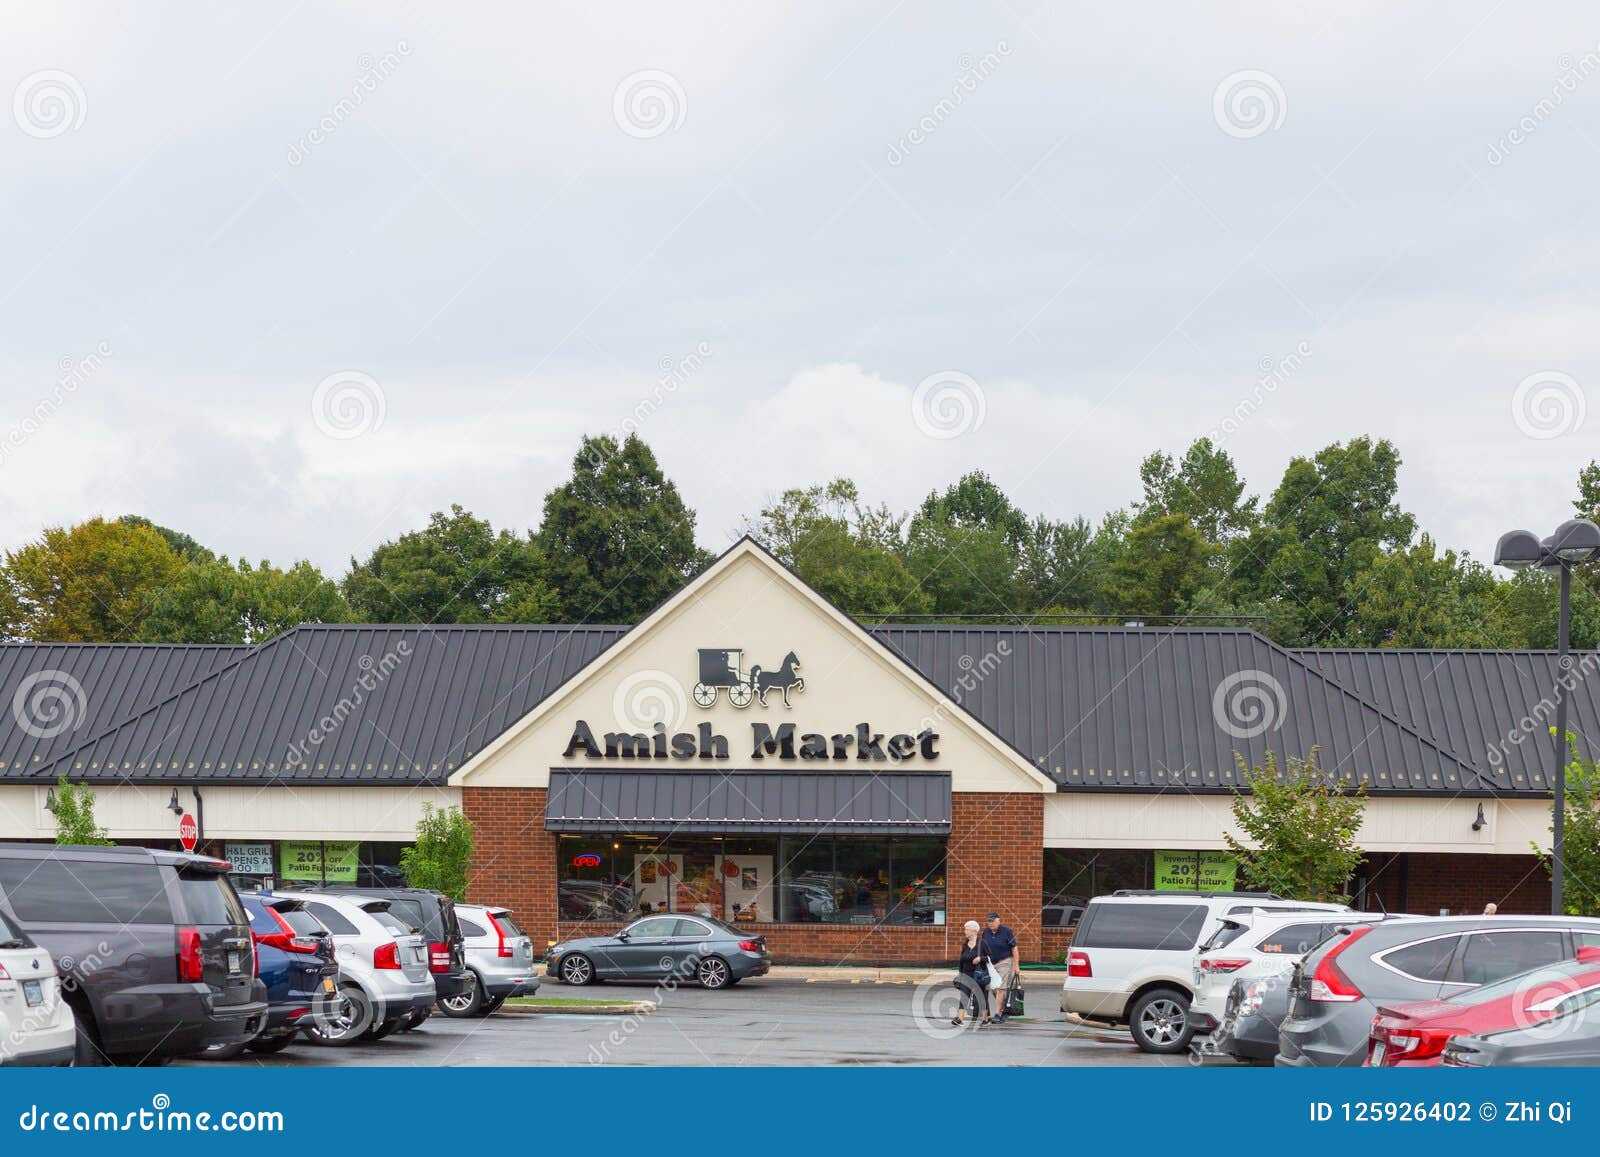 tienda-del-mercado-de-amish-125926402.jpg